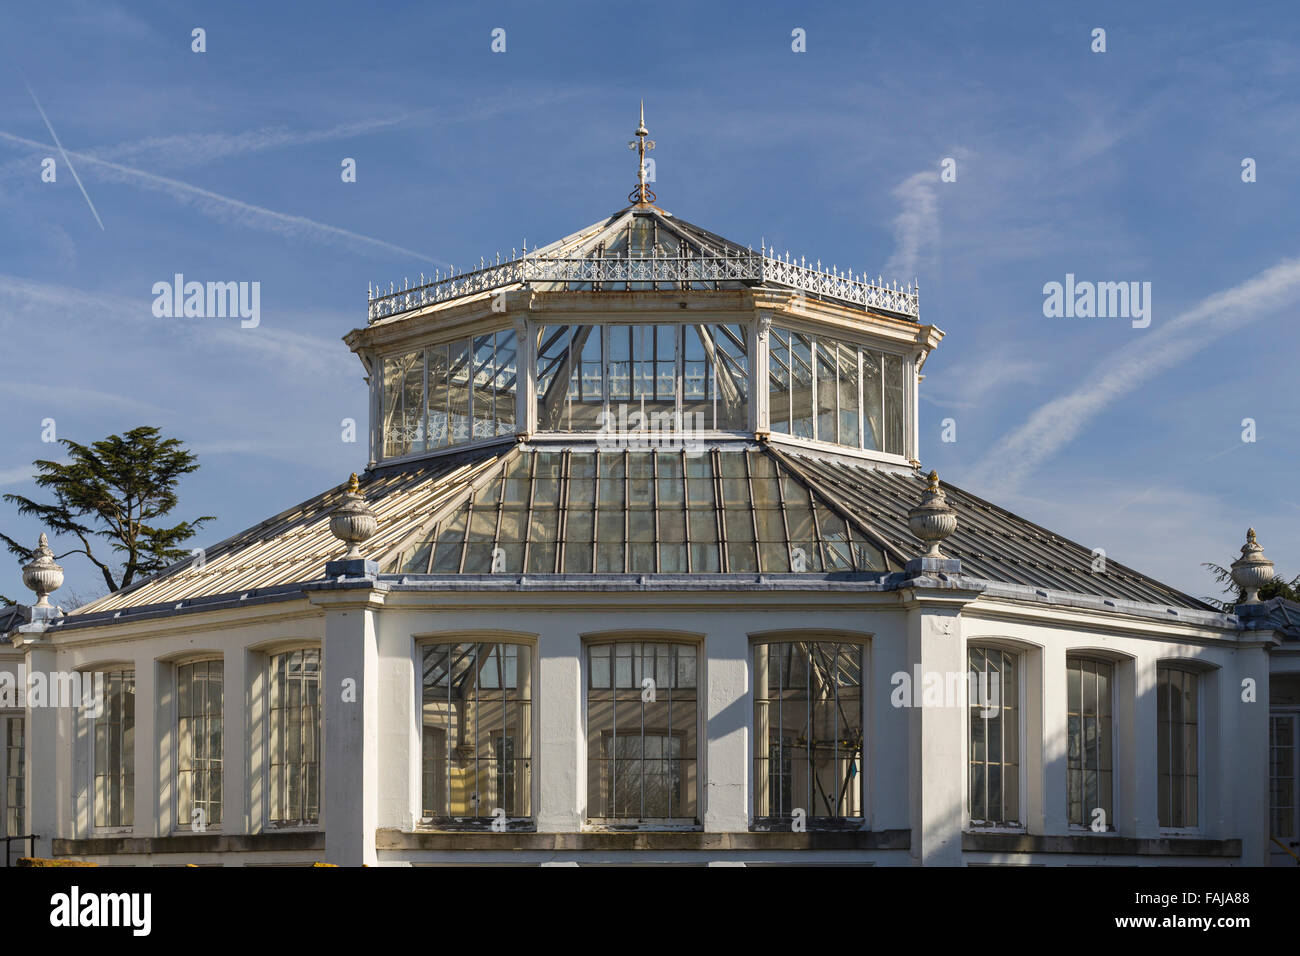 Chambre tempérée, Royal Botanic Gardens, Kew, Londres, Angleterre, Royaume-Uni Banque D'Images